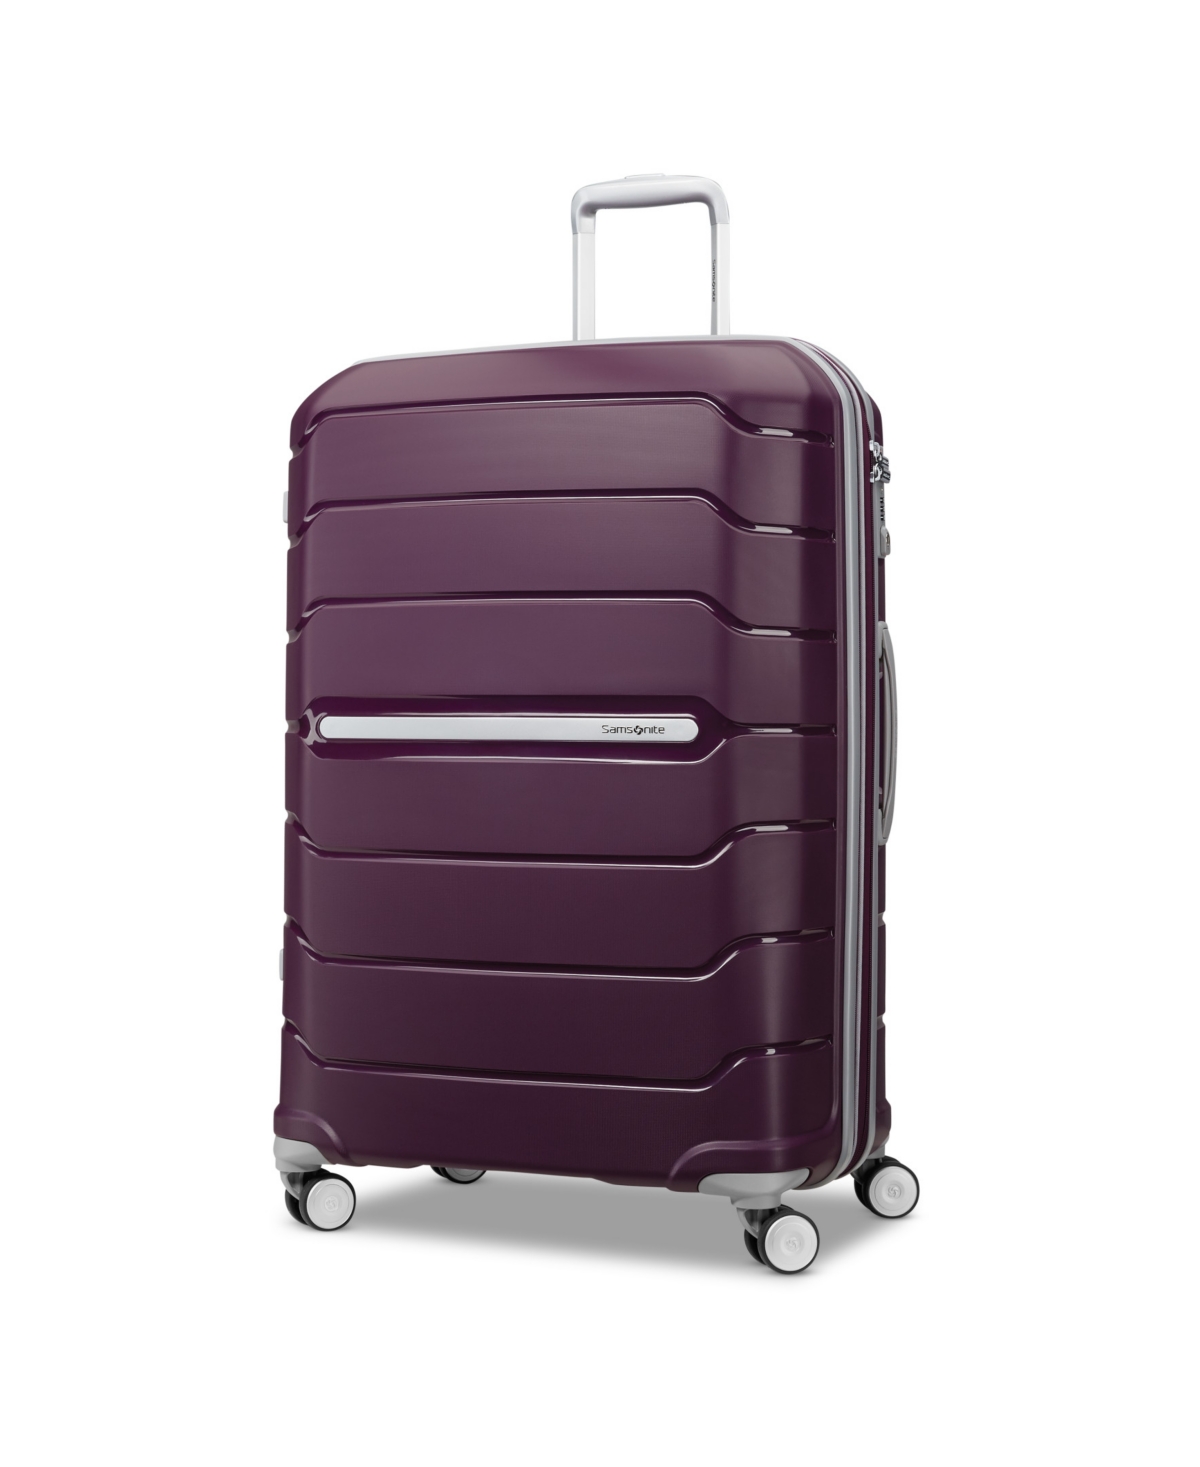 Freeform 28" Expandable Hardside Spinner Suitcase - White, Gray